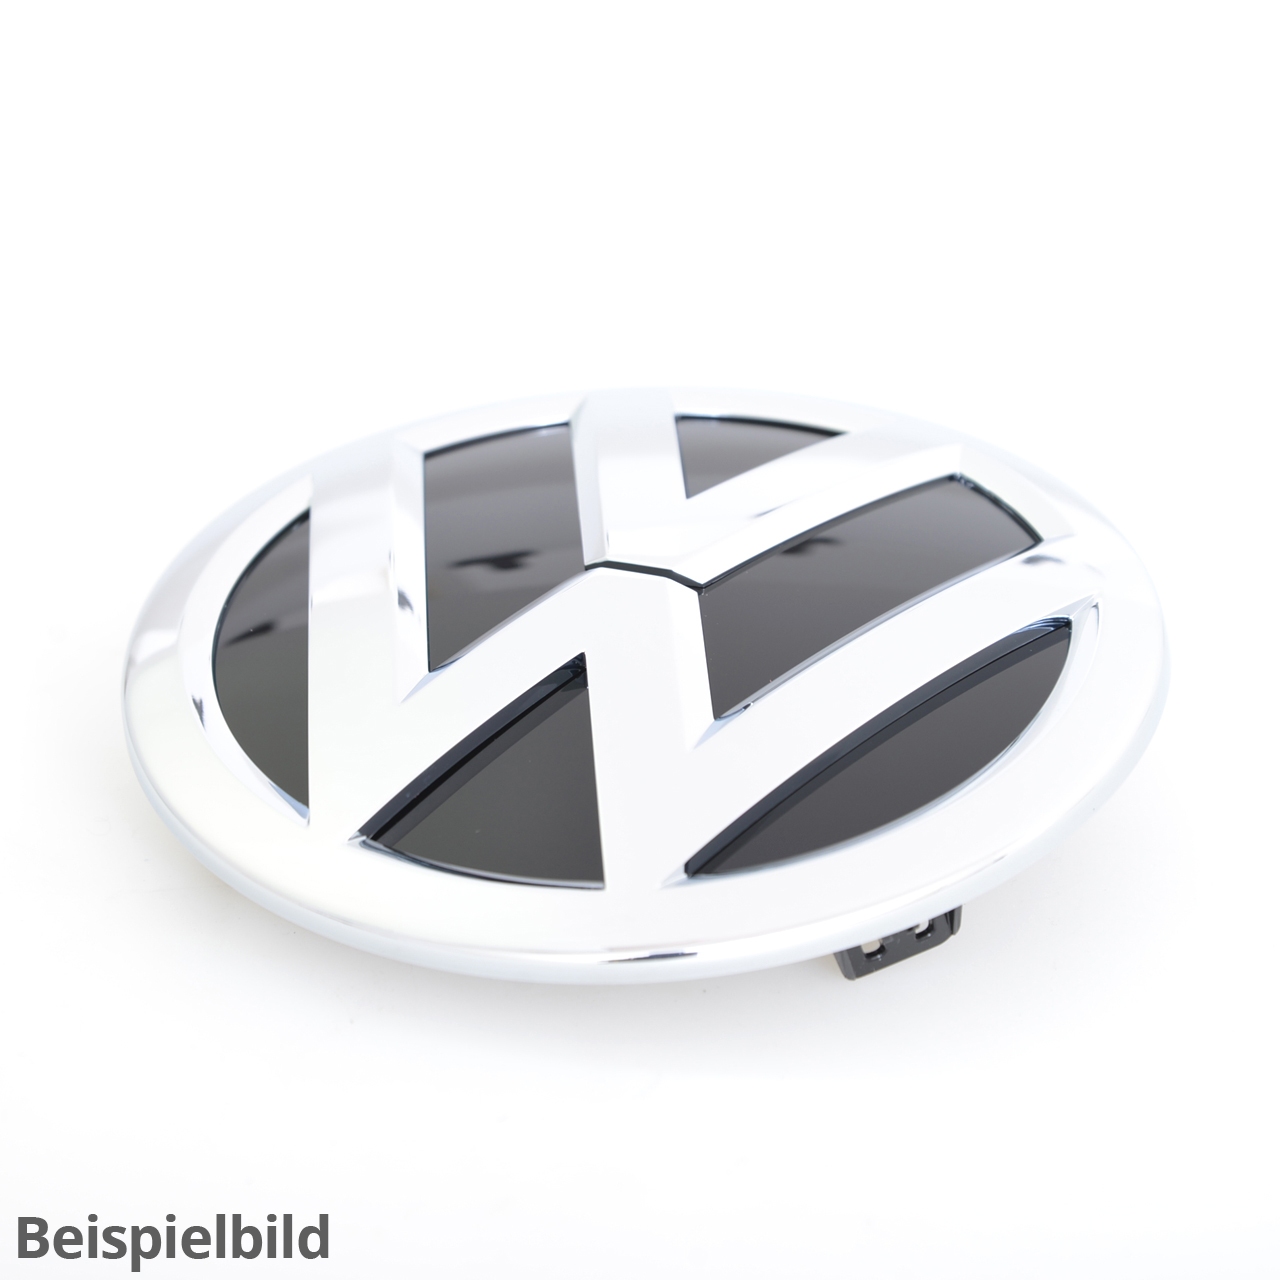 Volkswagen Emblem - 3C8-853-601A-FXC